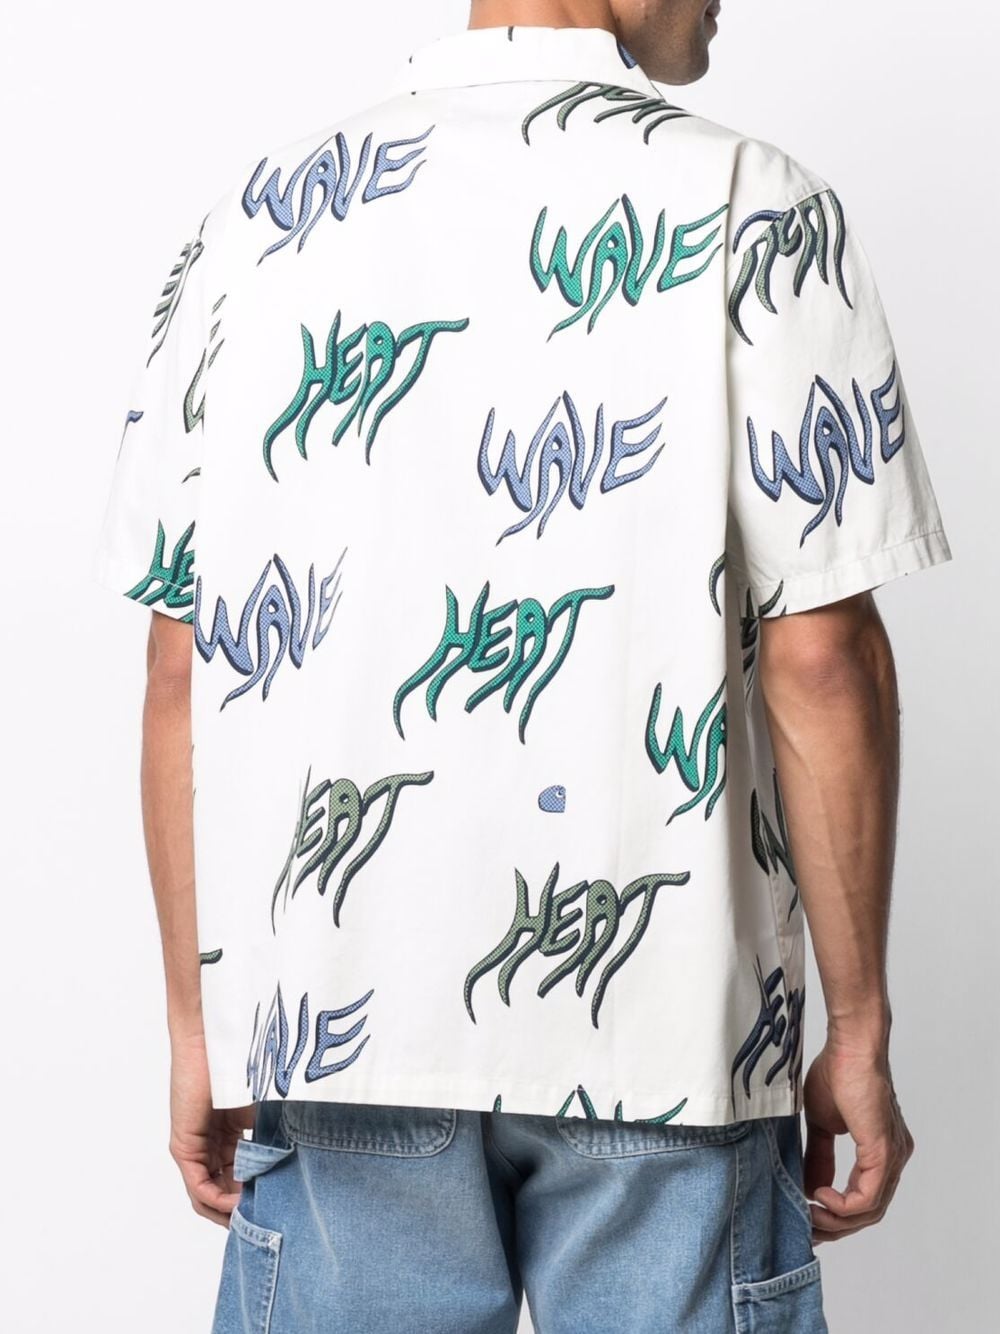 фото Carhartt wip рубашка heat wave с короткими рукавами